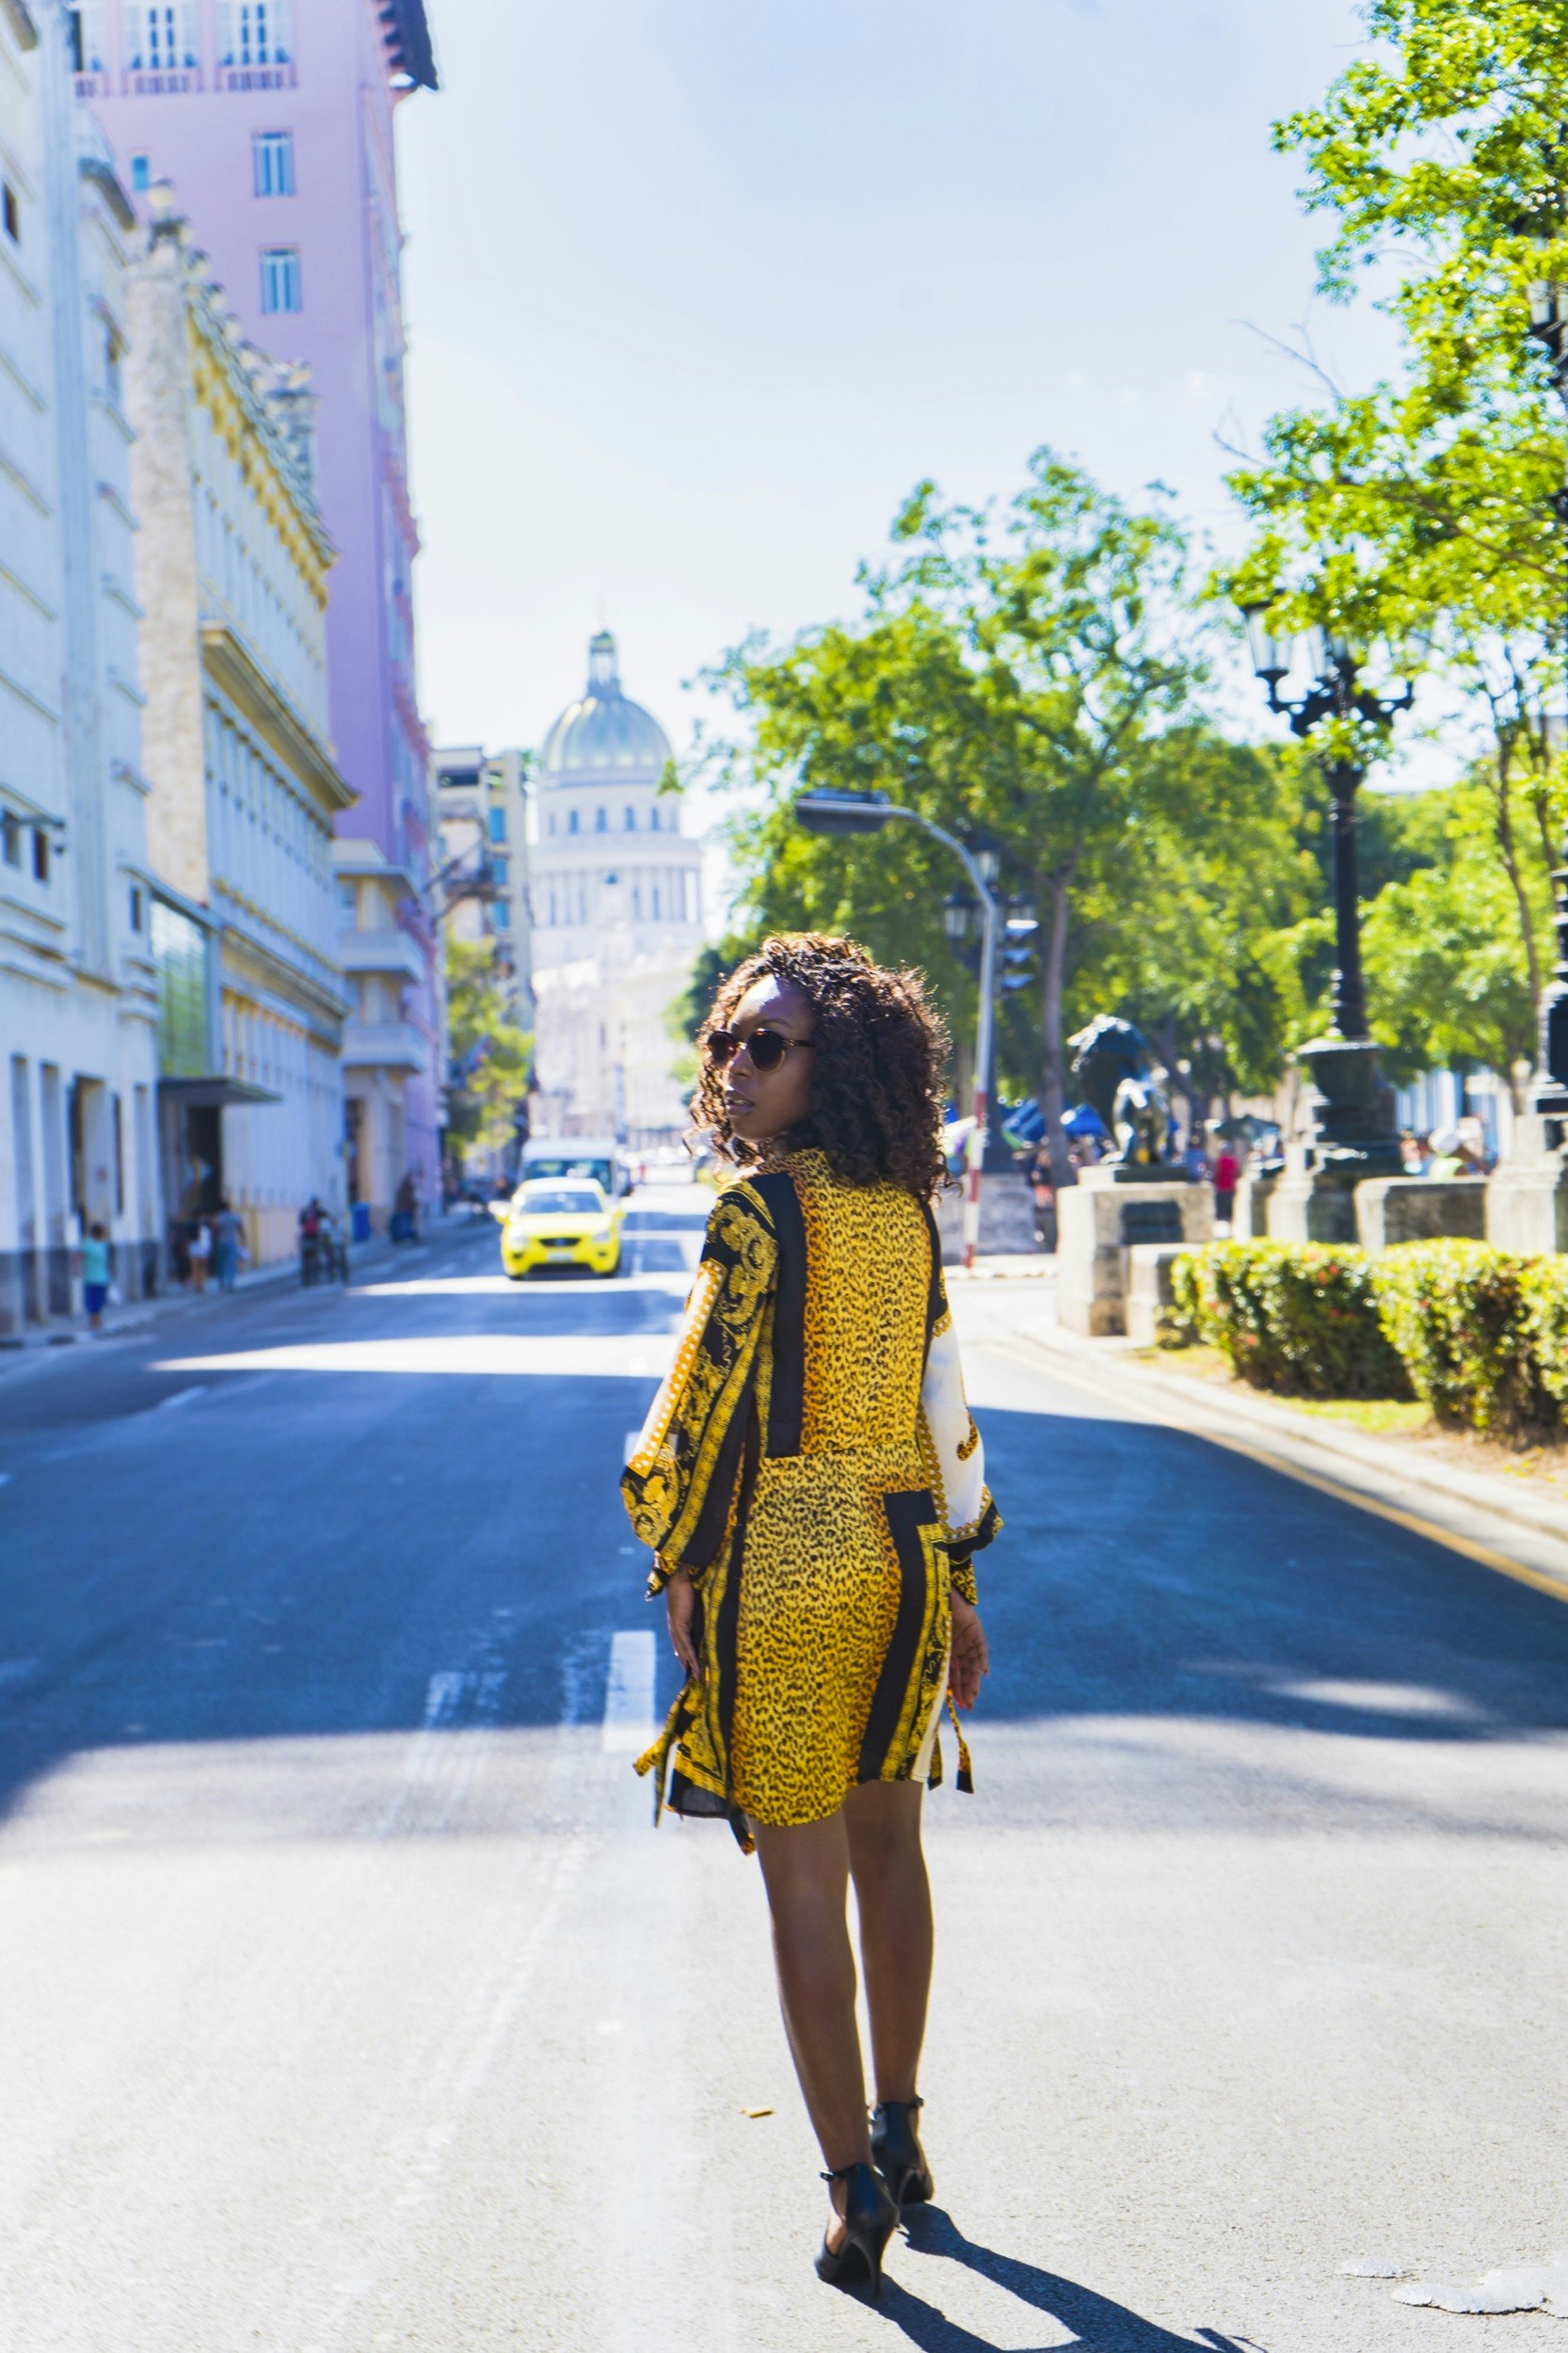 A black woman looks back as she walks down a street in Cuba